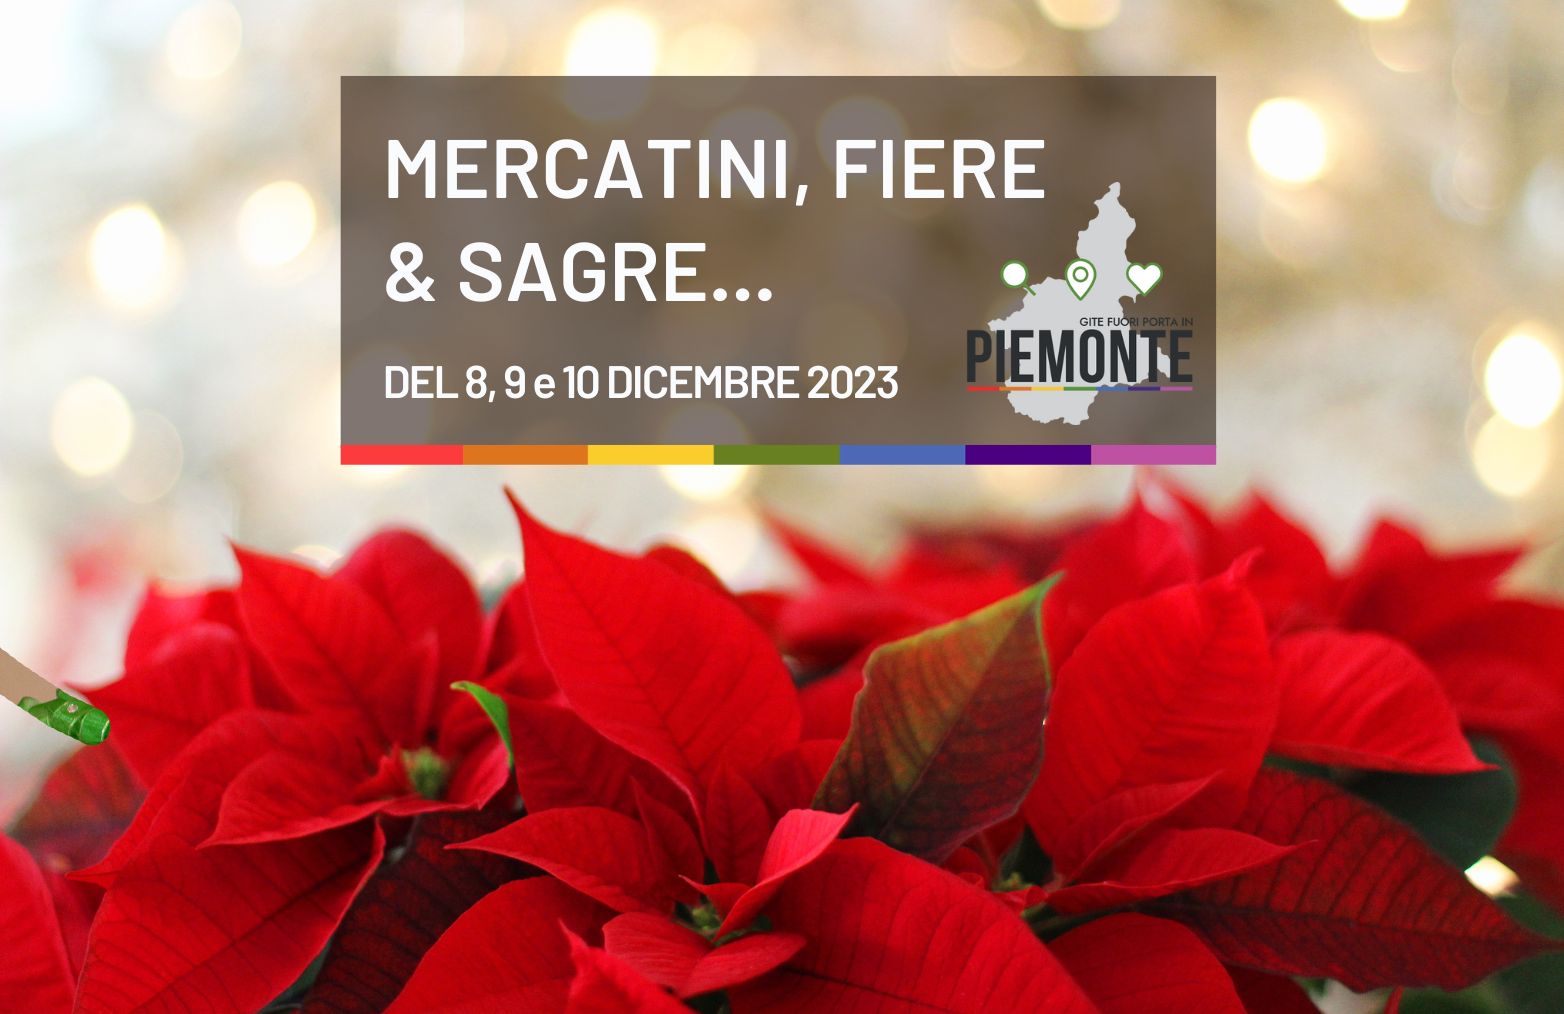 Cosa fare al ponte dell’Immacolata, l’8, 9 e 10 dicembre in Piemonte tra eventi e mercatini di Natale